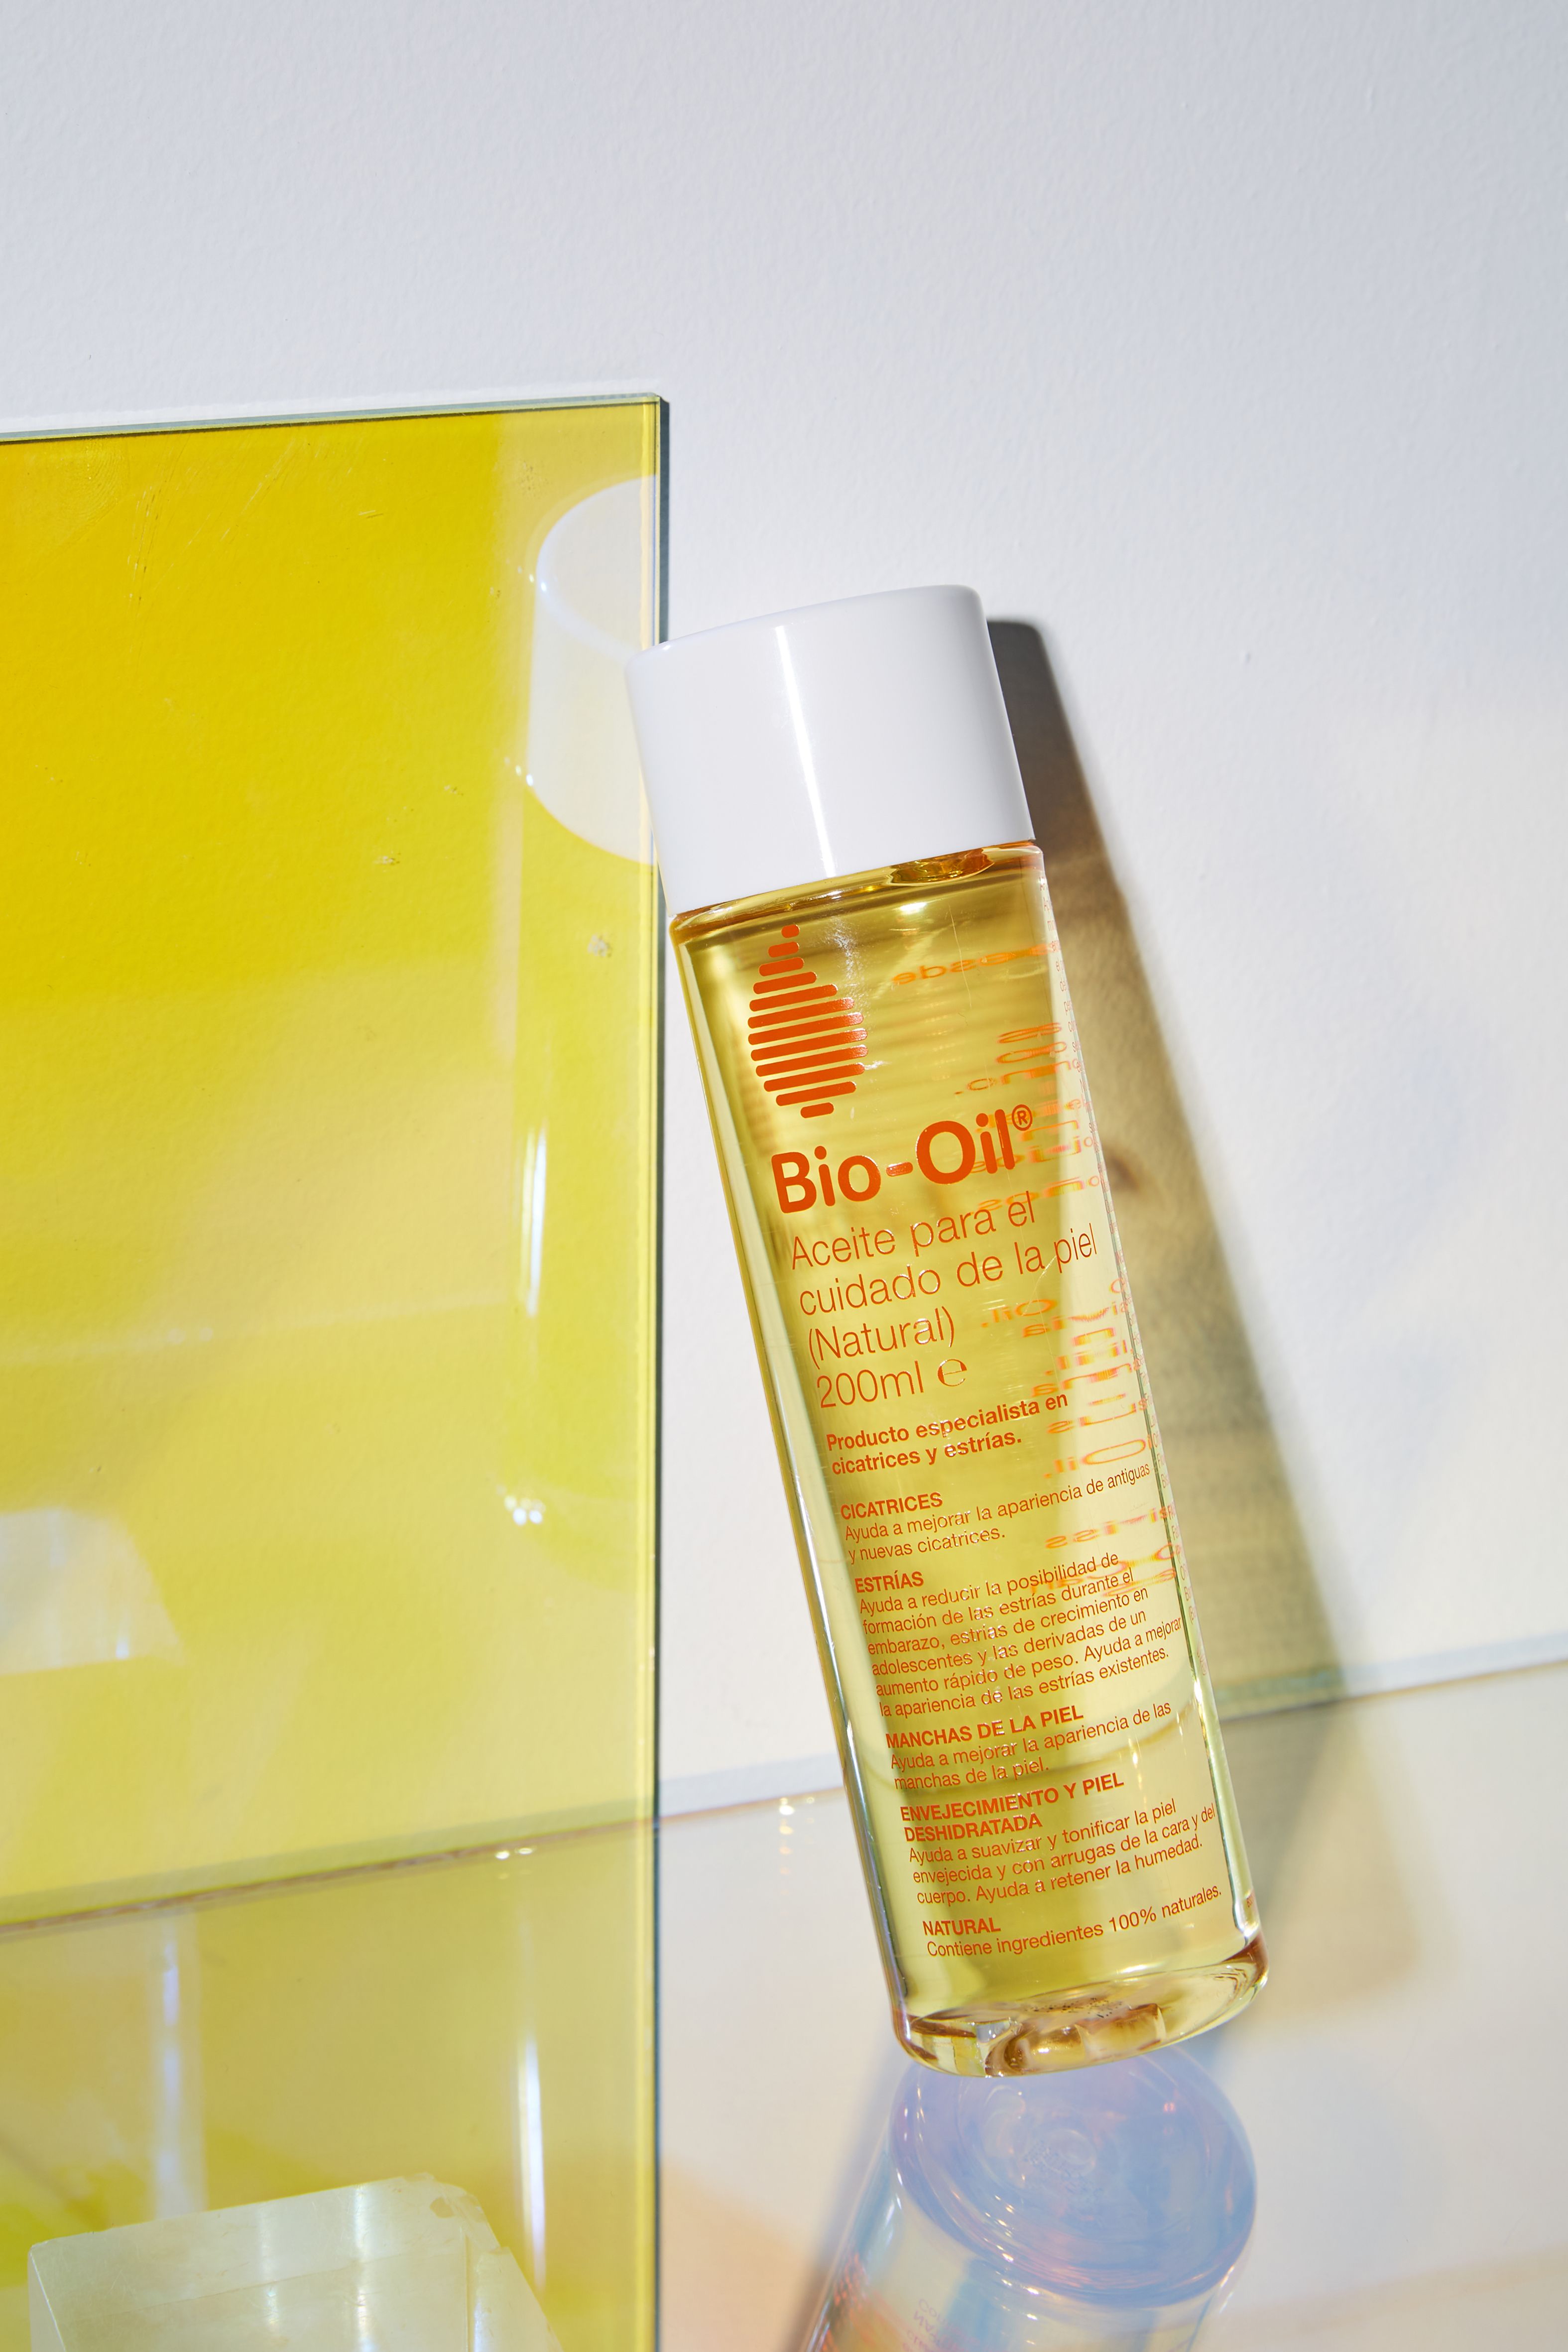 El nuevo aceite de Bio Oil para las manchas, estrías y cicatrices